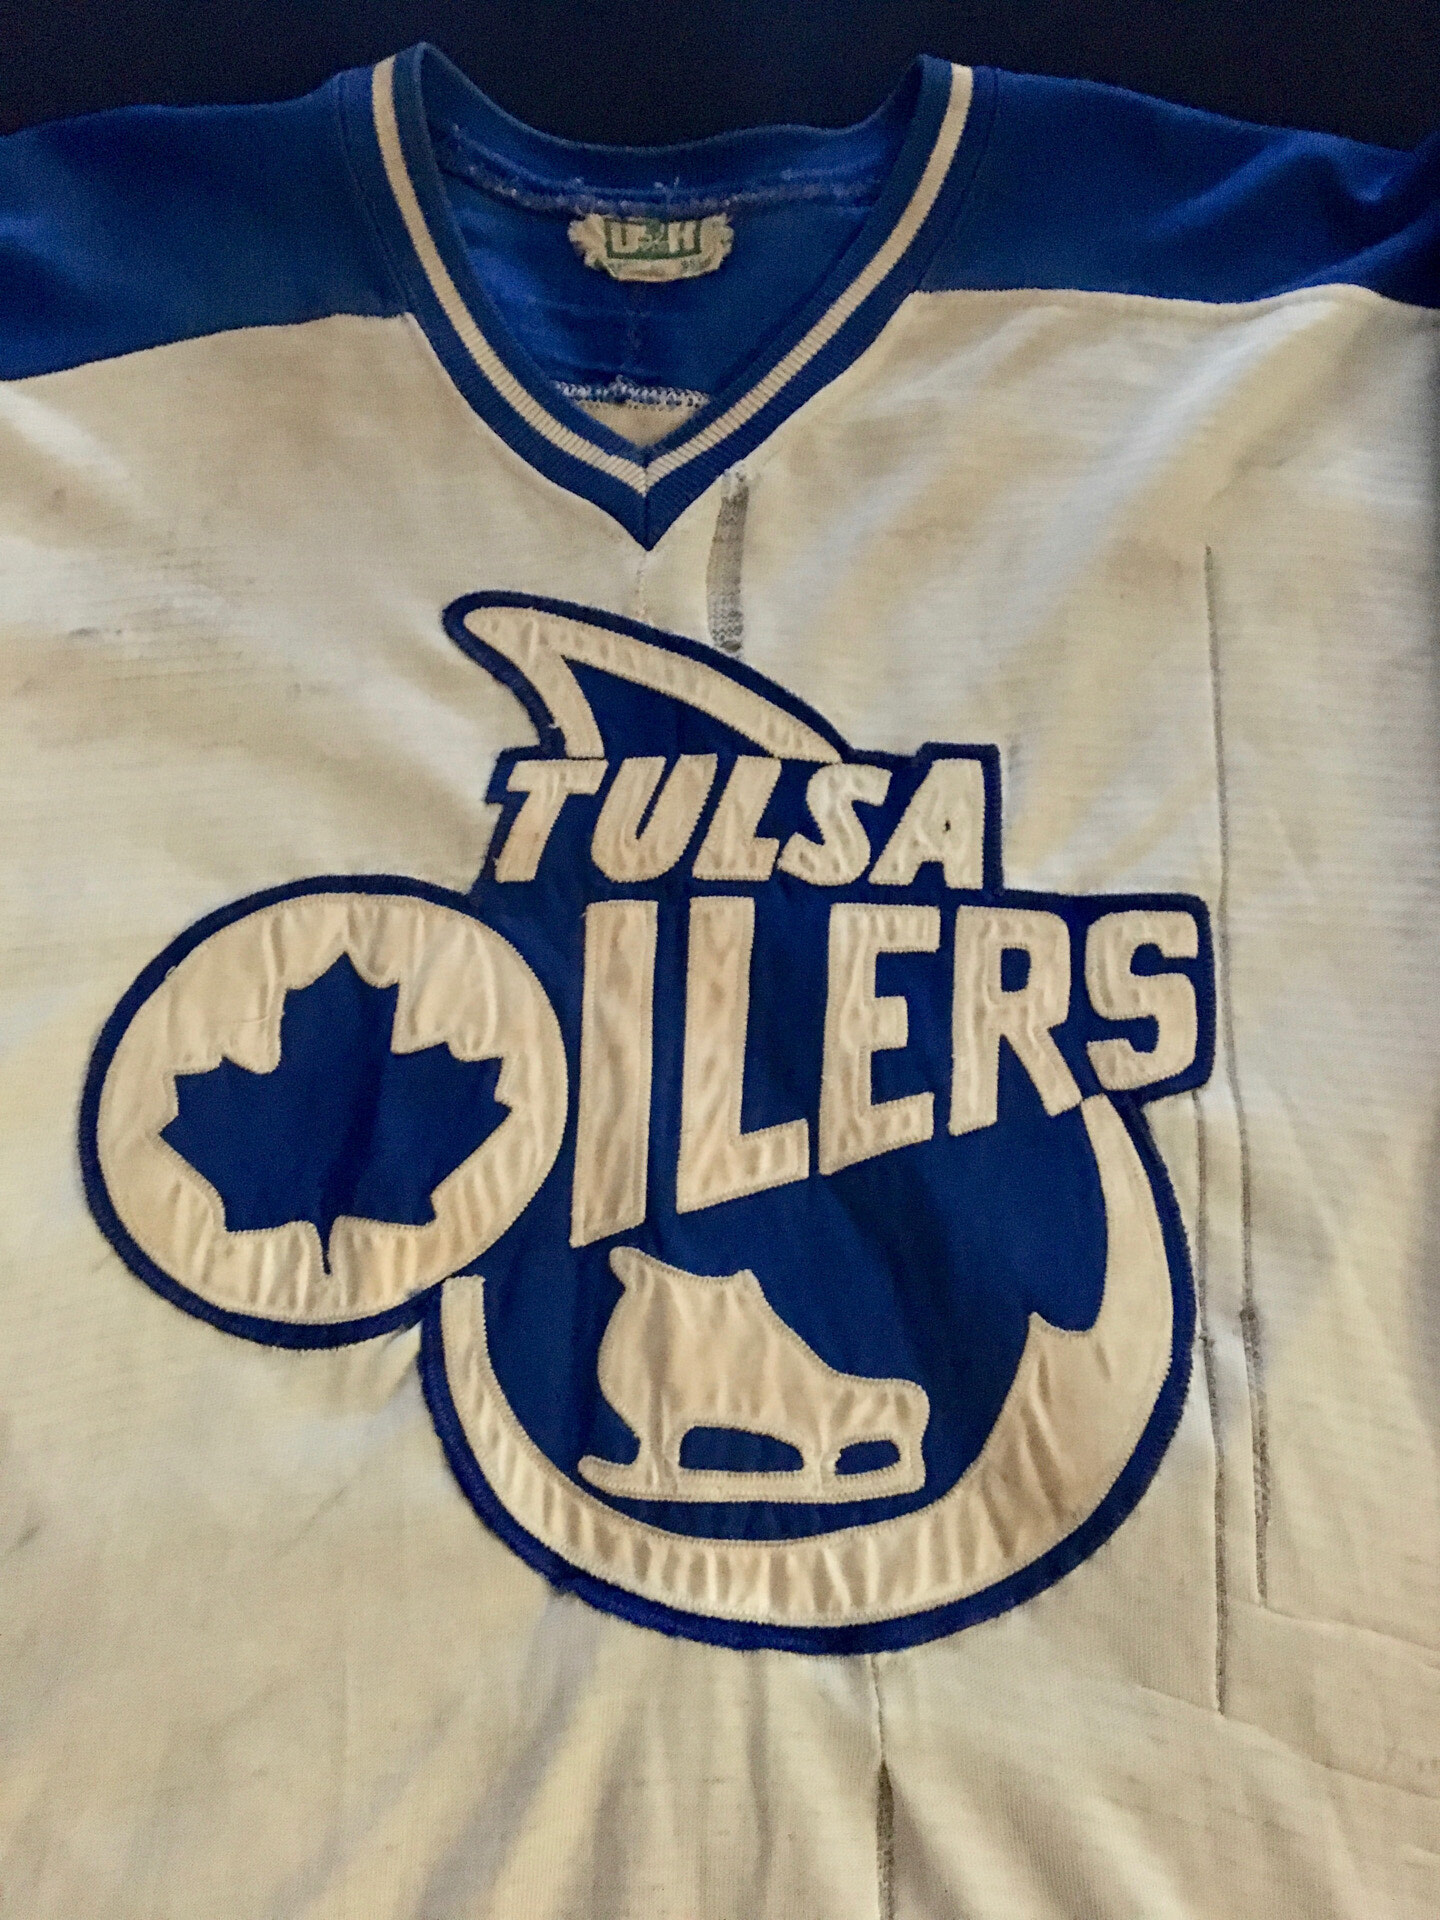 JERSEY - 05/06 Tulsa Oilers Maroon Jersey